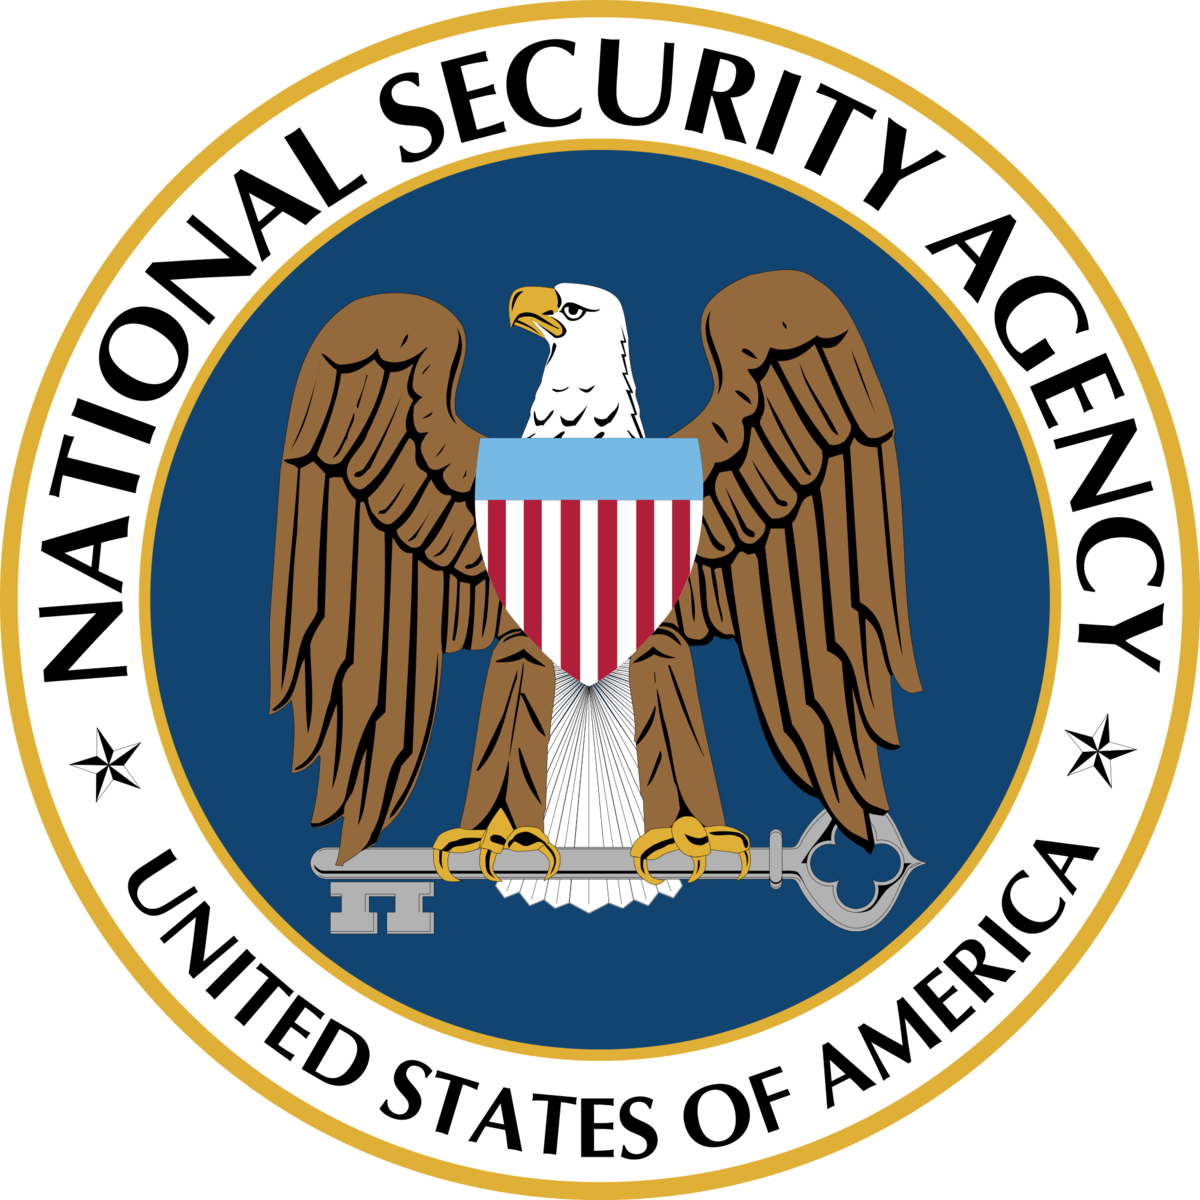 <p class="Normal"> <strong>4. Hệ thống thu thập, phân loại và mã hóa dữ liệu của NSA (Cơ quan An ninh Quốc gia Mỹ)</strong></p> <p class="Normal"> Công nghệ càng phát triển, sự riêng tư của chúng ta càng dễ bị xâm phạm. Nhất cử nhất động của mỗi người đều bị giám sát chặt chẽ, nhưng không phải giám sát bởi người mà bởi thuật toán.</p> <p class="Normal"> Nhờ các vụ rò rỉ tài liệu mật (Wikileaks, Edward Snowden…), dân tình mới biết đến sự tồn tại của liên minh tình báo Five Eyes gồm 5 quốc gia: Mỹ, Anh, Australia, Canada, New Zealand. 5 cơ quan tình báo của 5 quốc gia này bắt tay với nhau, từ đó họ kiểm soát được tất cả cuộc điện thoại, email, ảnh chụp webcam và vị trí địa lý của mọi người. Với yêu cầu thu thập, xử lý, phân tích, tổng hợp một lượng dữ liệu khổng lồ với độ chính xác cao và đương nhiên, Five Eyes phải sử dụng các thuật toán.</p> <p class="Normal"> Một sự thật trớ trêu, NSA phủ nhận việc “thu thập” dữ liệu của chúng ta. Theo thủ tục luật tố tụng năm 1982, thông tin coi như được thu thập khi và chỉ khi quá trình thu thập trực tiếp bởi nhân viên của ủy ban phòng thủ trực thuộc cơ quan tình báo quốc gia. Nếu thông tin được dò quét và trích xuất tự động từ bất kỳ nguồn nào bởi máy móc hoặc các hệ thống tự động thì các thông tin đó chỉ coi như “được thu thập” khi và chỉ khi chúng được xử lý thành dạng văn bản mà con người có thể đọc được.</p> <p class="Normal"> Vấn đề nằm ở chỗ, các thuật toán lại có mối liên hệ mật thiết với con người (nói đúng ra là con người sản xuất ra thuật toán để phục vụ mục đích của mình). Và một khi chúng ta nghĩ đến việc các thuật toán thu thập dữ liệu cá nhân, chúng ta cũng phải nghĩ đến tác giả đứng đằng sau thuật toán đó và động cơ của họ. Không một cá nhân hay tổ chức nào có thể đảm bảo về tính riêng tư của các dữ liệu mà họ thu được.</p> <p class="Normal"> Một vấn đề nữa liên quan tới thuật toán, đó là hệ mật Suite B của NSA. Hệ mật này là tập hợp các thuật toán mã hóa được phát triển bới chính NSA và phục vụ cho công việc của NSA. Hệ mật này được ứng dụng vào quá trình mã hóa dữ liệu, trao đổi khóa, chữ ký số, băm dữ liệu với mục đích duy nhất là bảo vệ tất cả thông tin của NSA.</p>